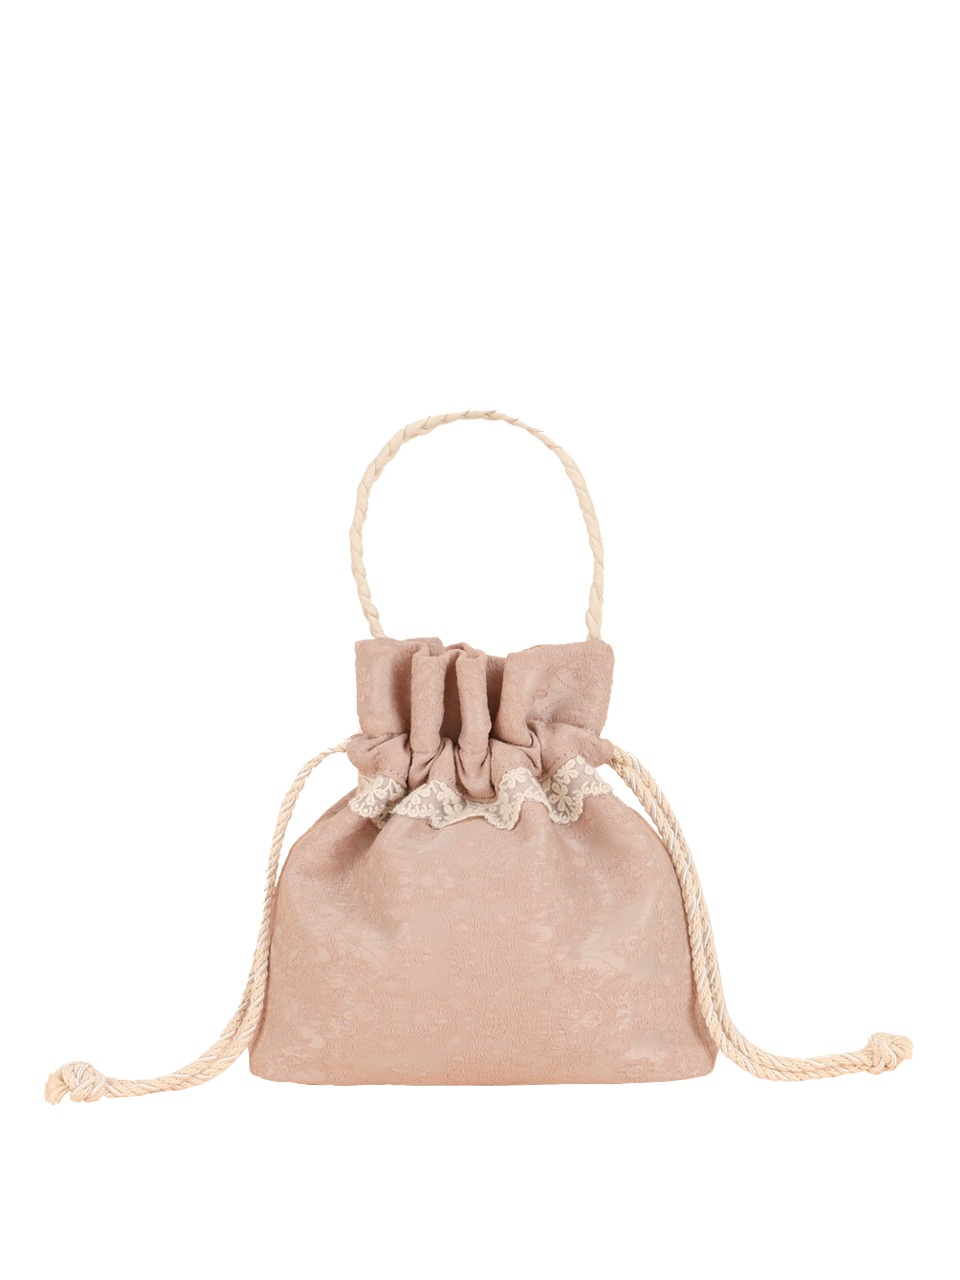 Lace drawstring bag - vintage pink - ovuni